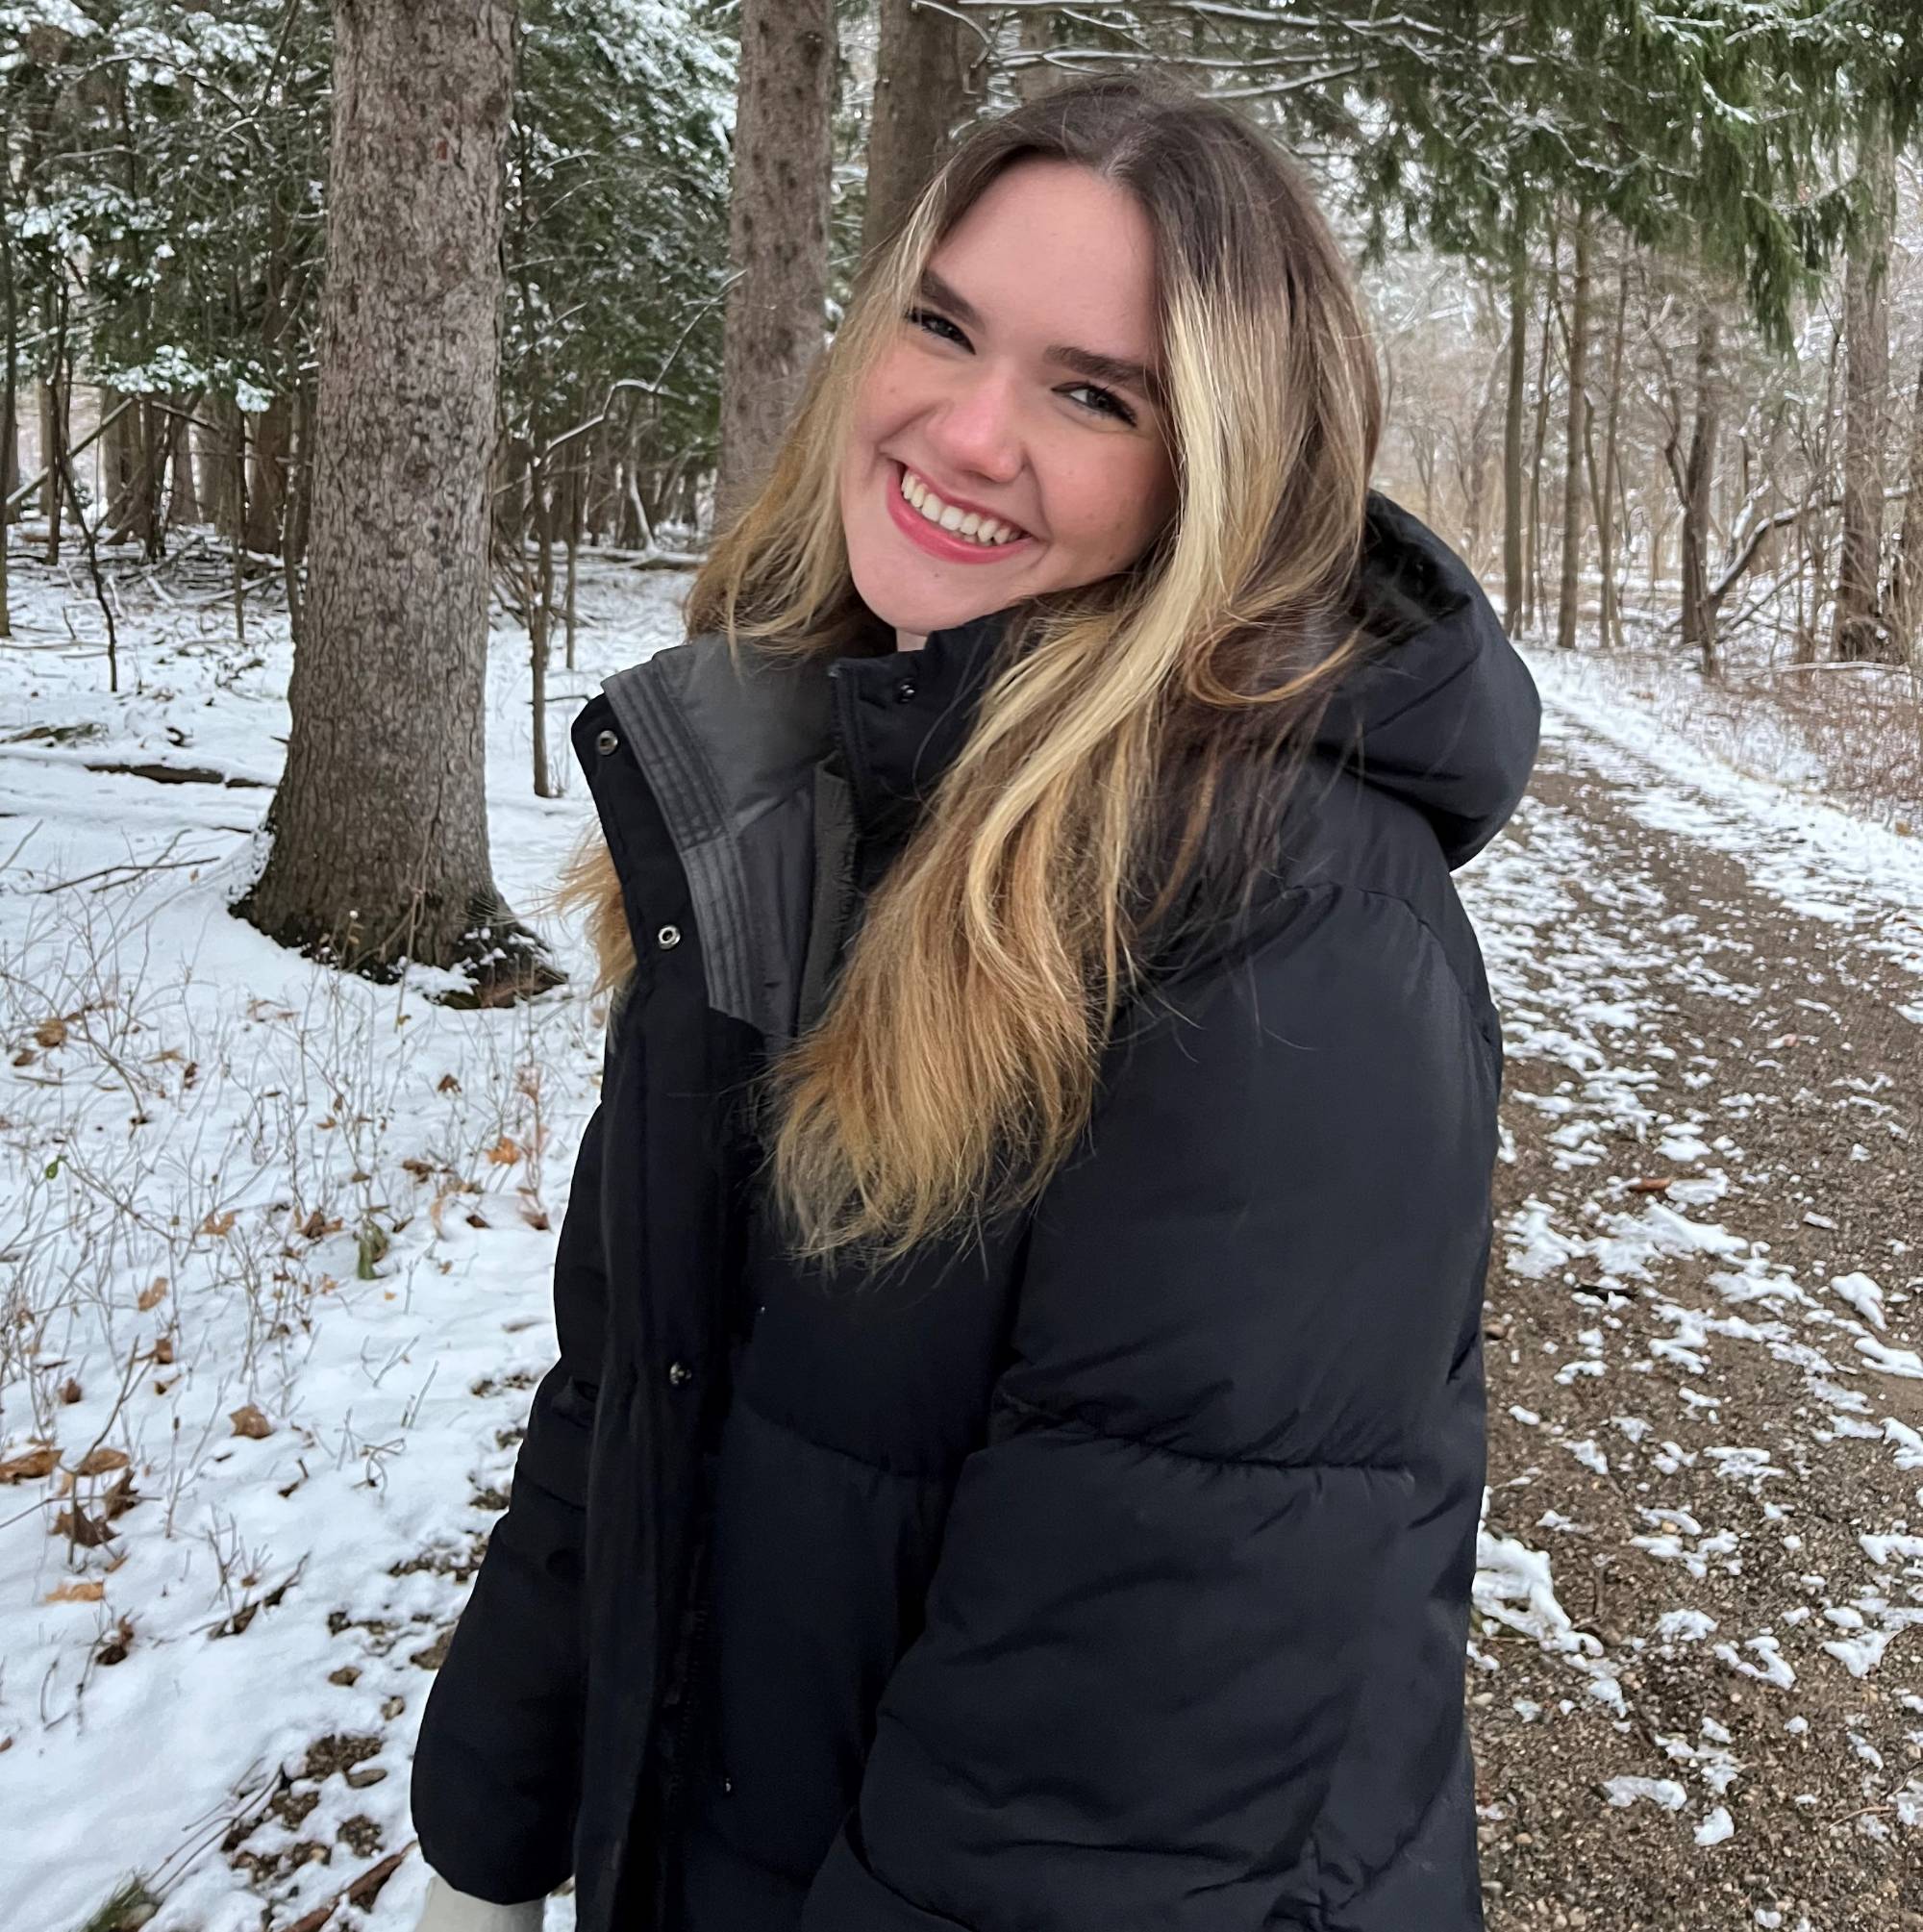 Melanie Siebert posing in front of trees in winter